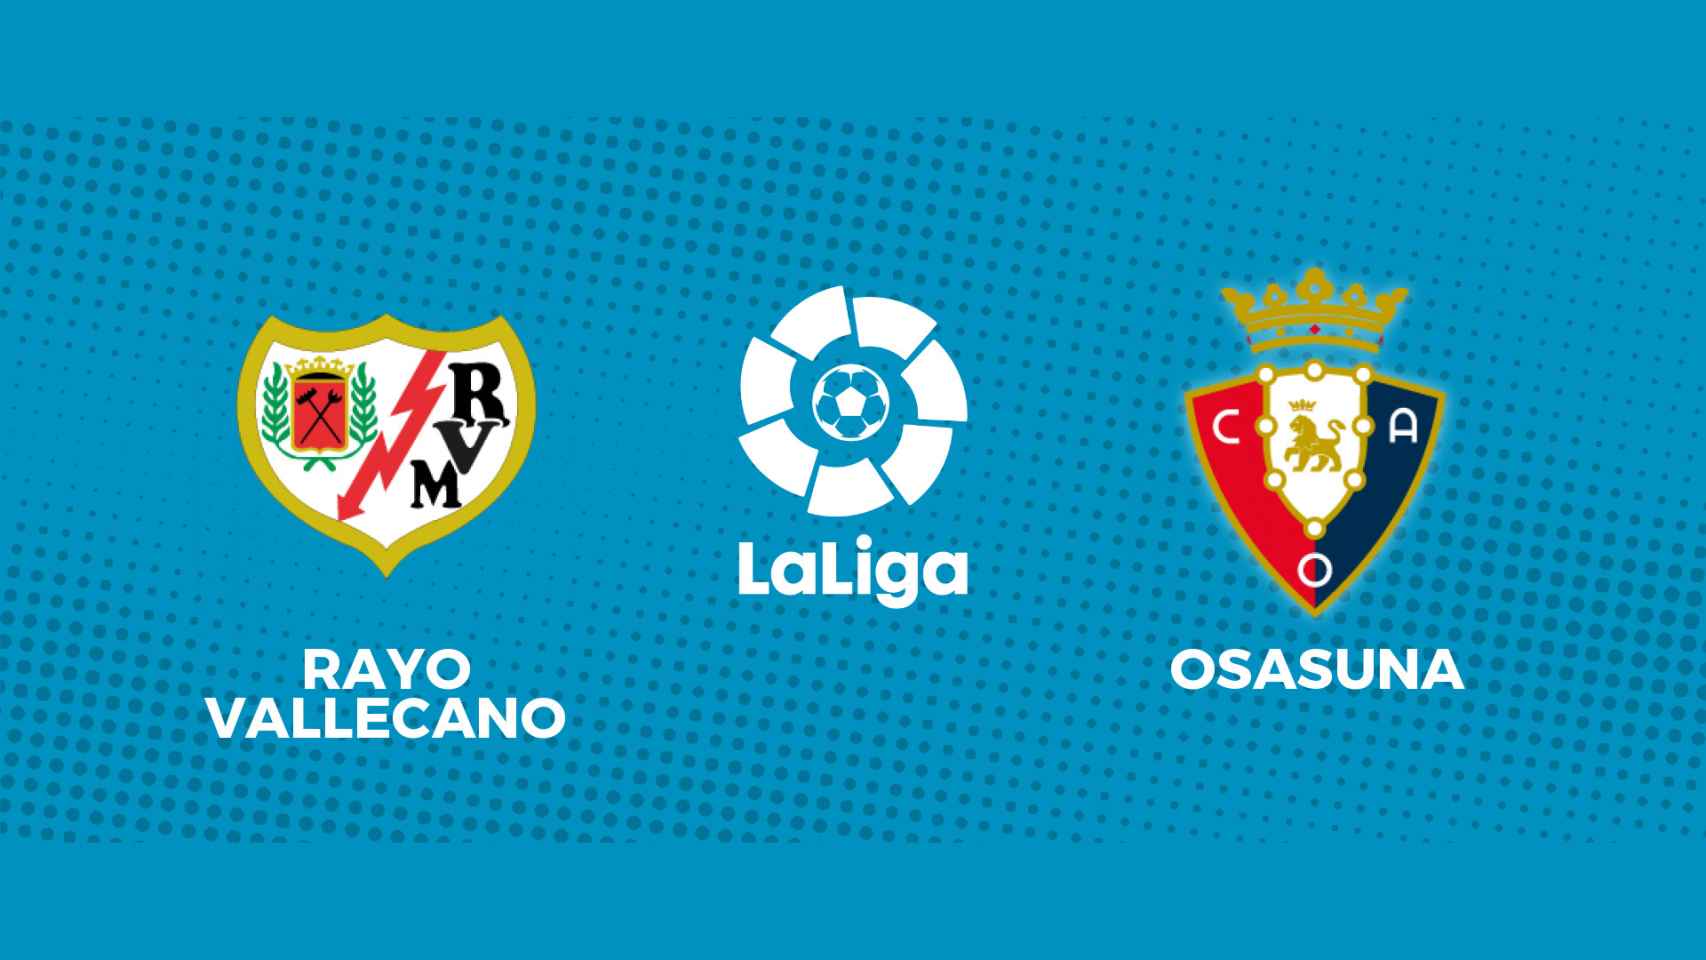 Rayo - Osasuna, La Liga en directo